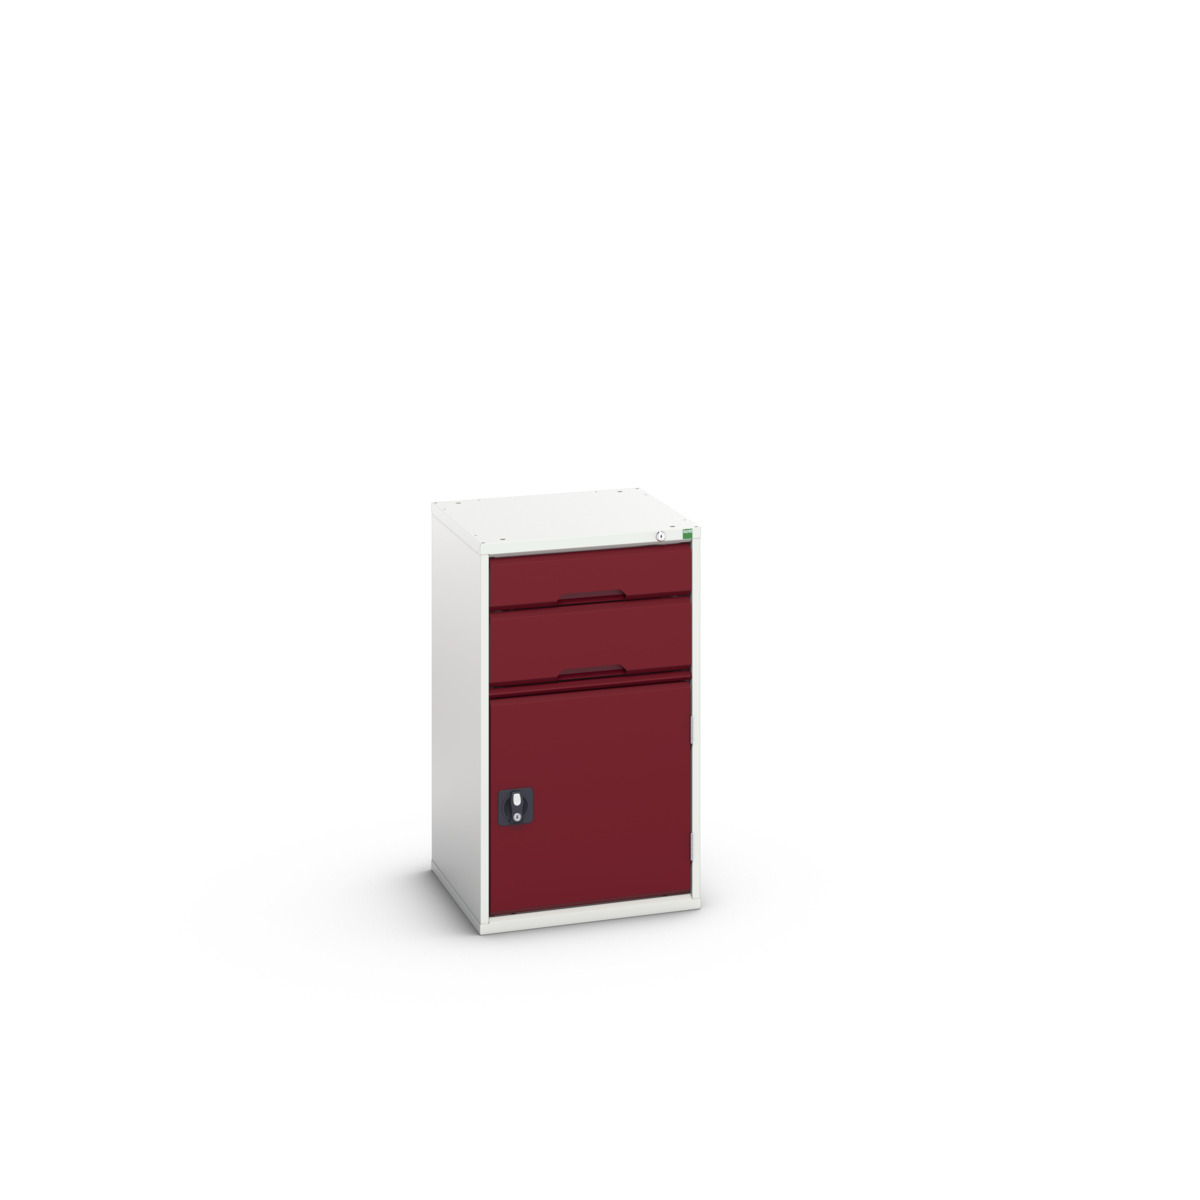 16925037.24 - verso drawer-door cabinet